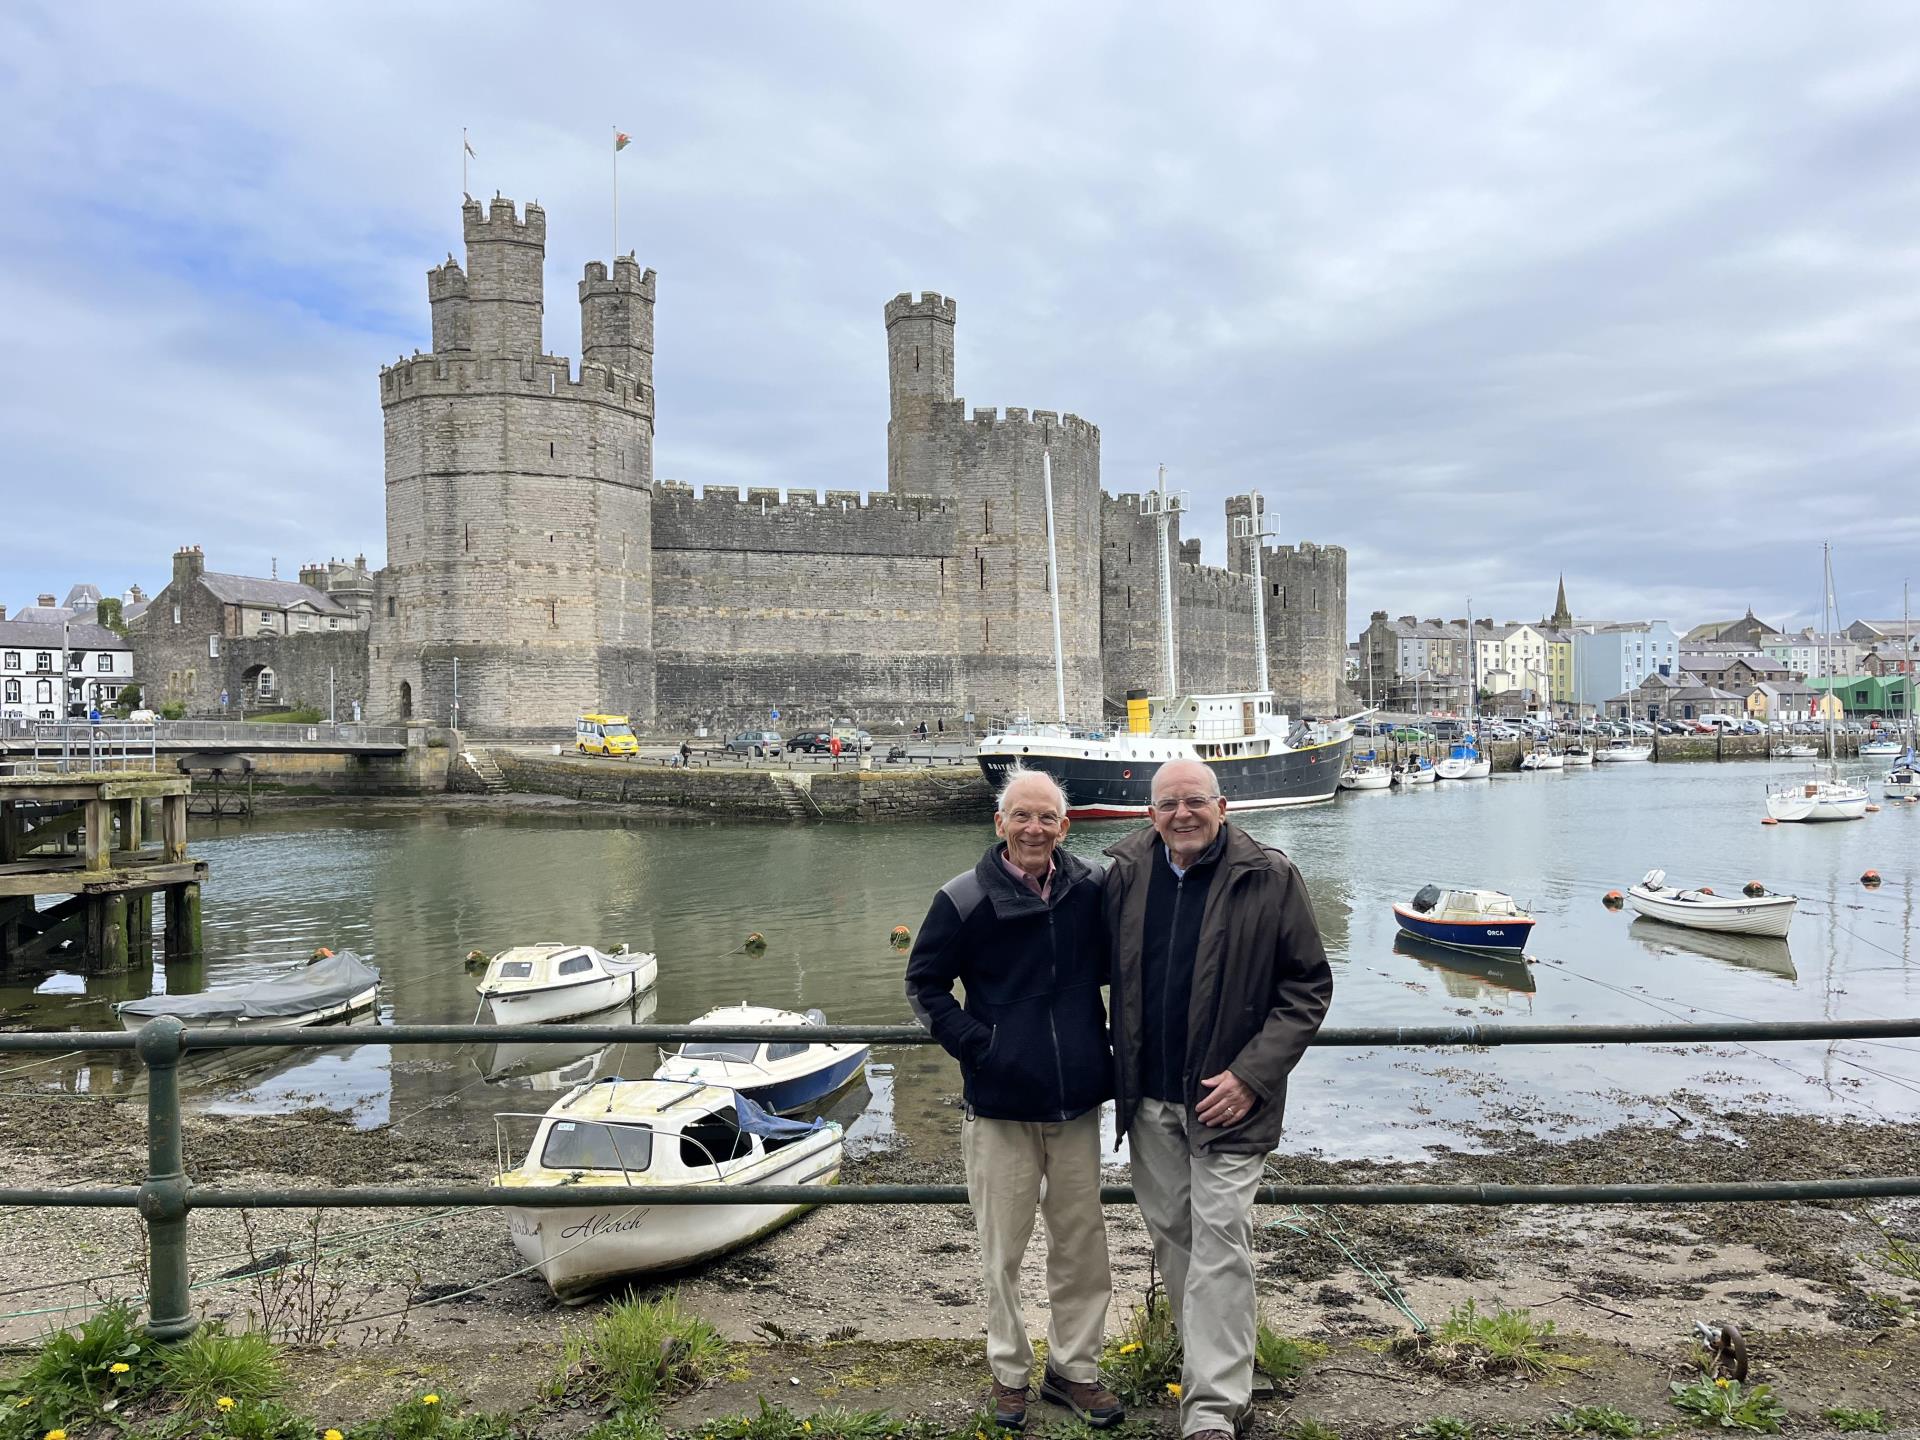 Two happy clients tour Wales' Castles